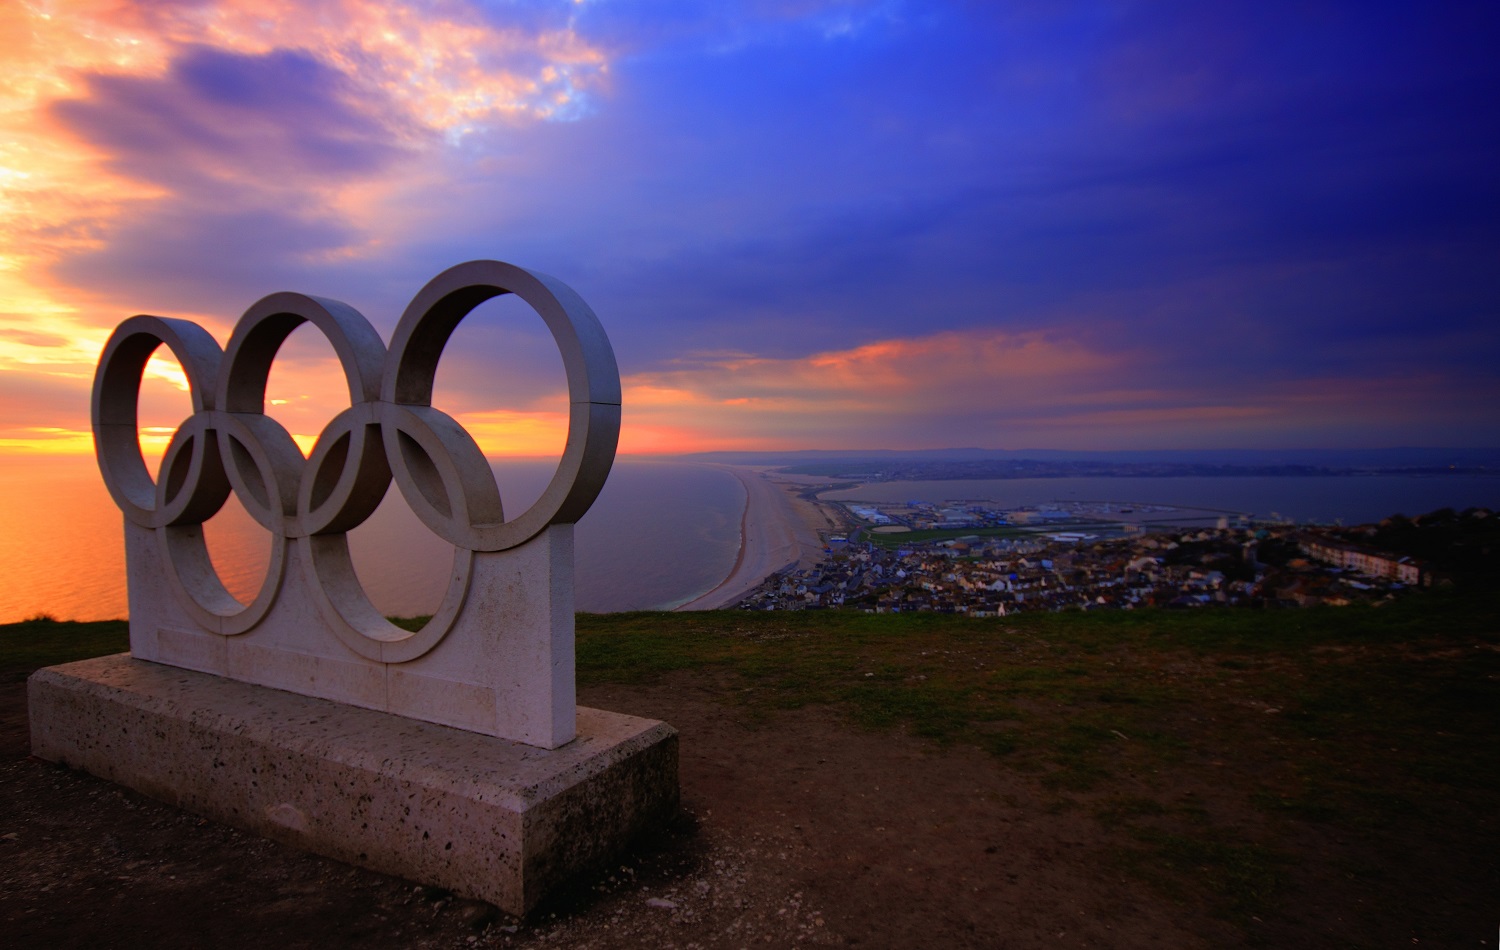 J. Šiugždinienė kritikuoja sprendimą leisti Rusijos ir Baltarusijos sportininkams dalyvauti Olimpinėse žaidynėse: tai dar vienas didžiulis nusivylimas